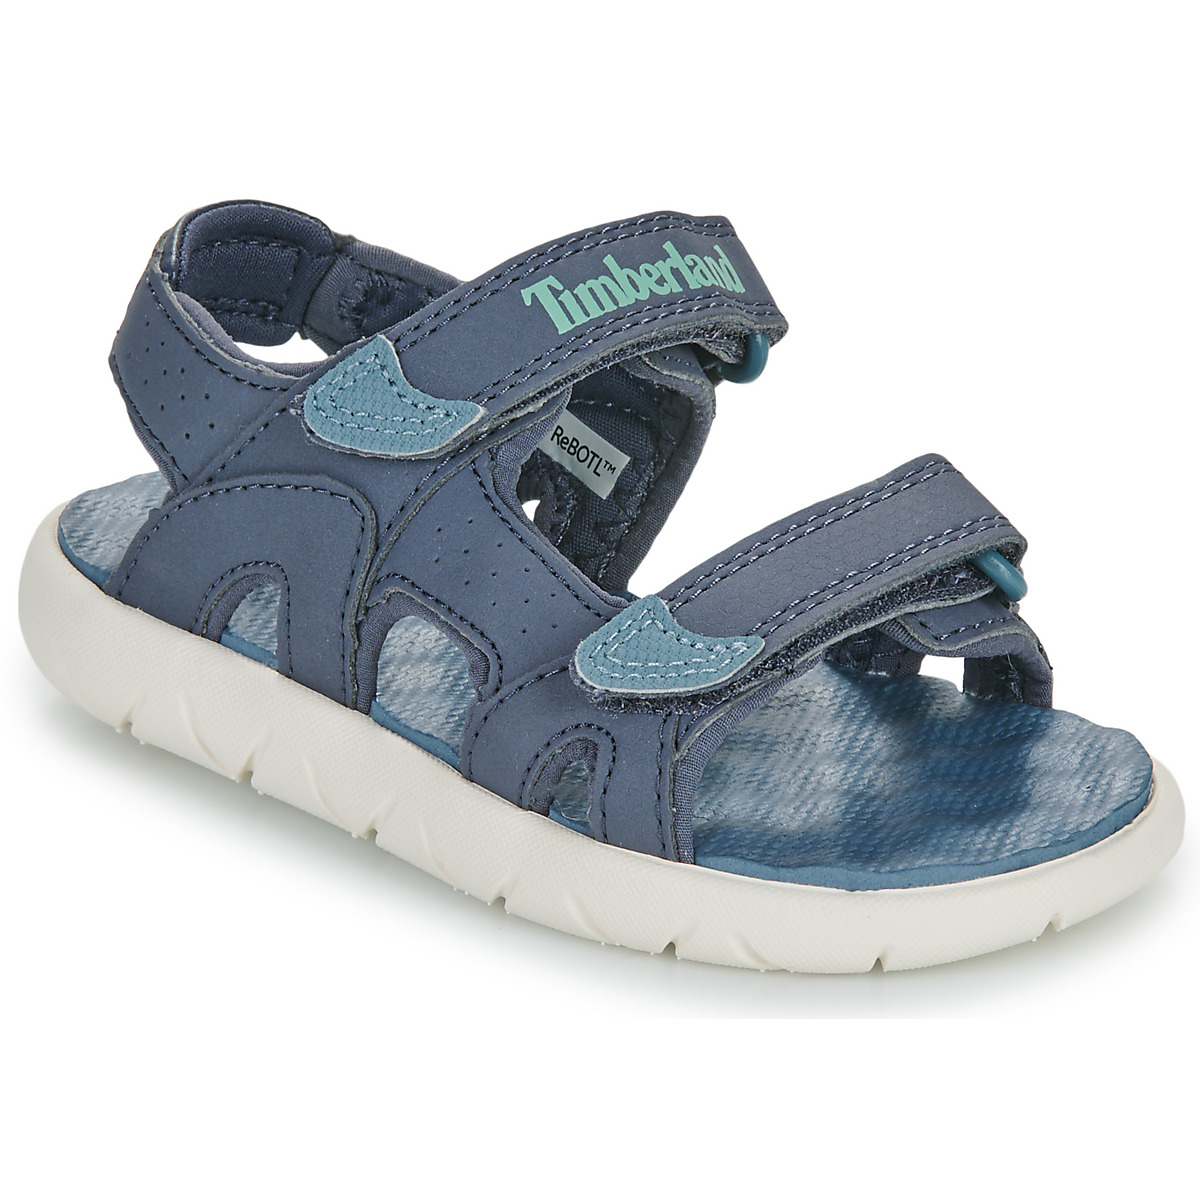 kengät Pojat Sandaalit ja avokkaat Timberland PERKINS ROW 2-STRAP Sininen